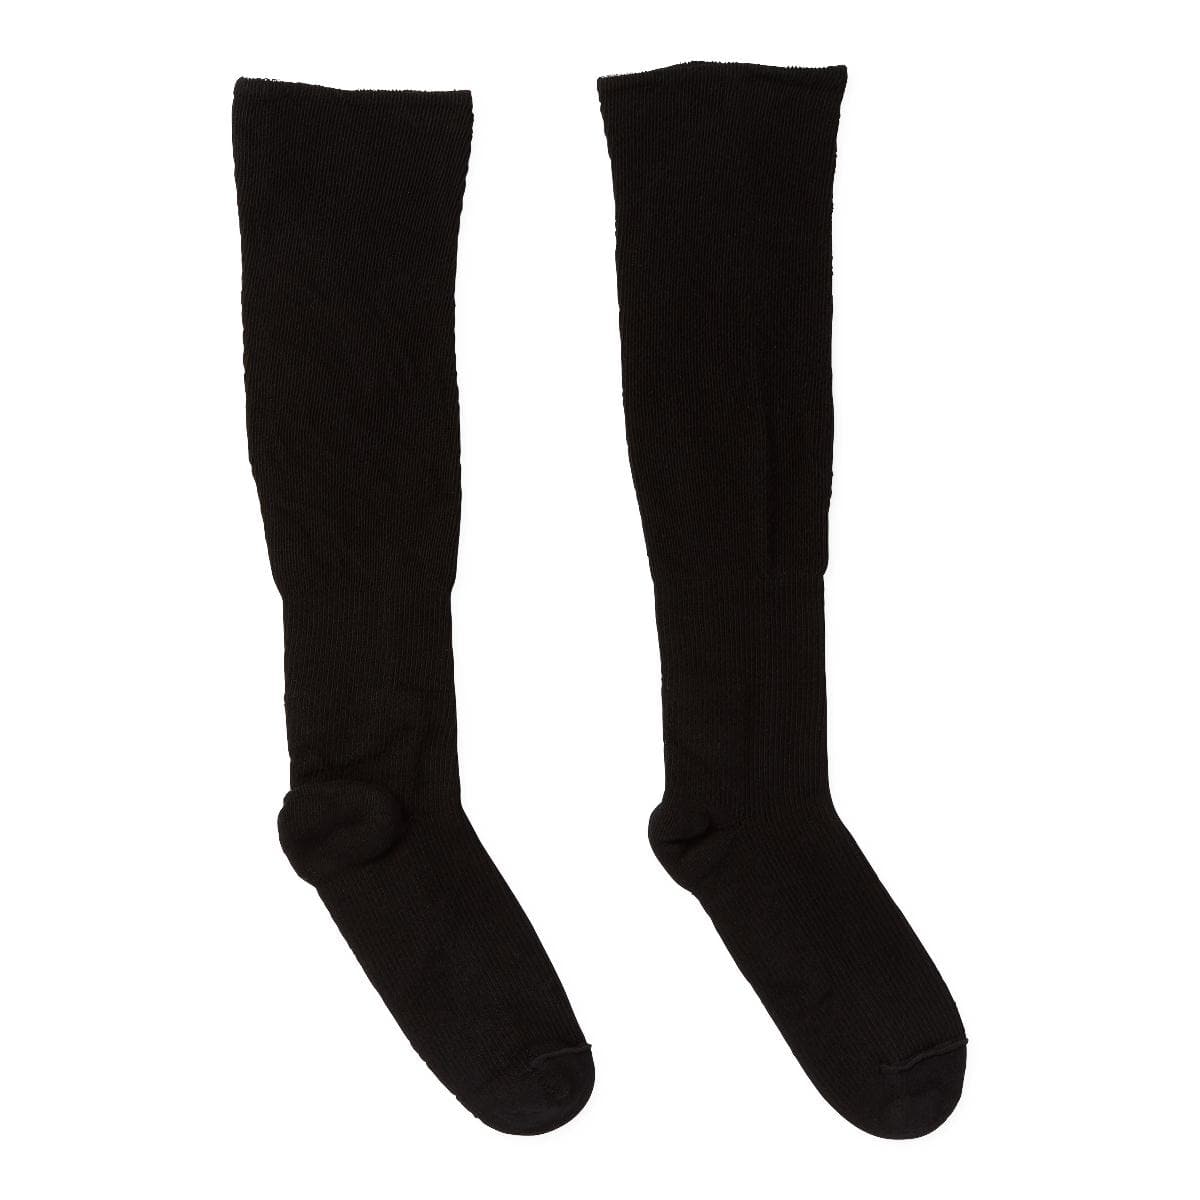 Medline SM Medline COMPRECARES Liner Socks